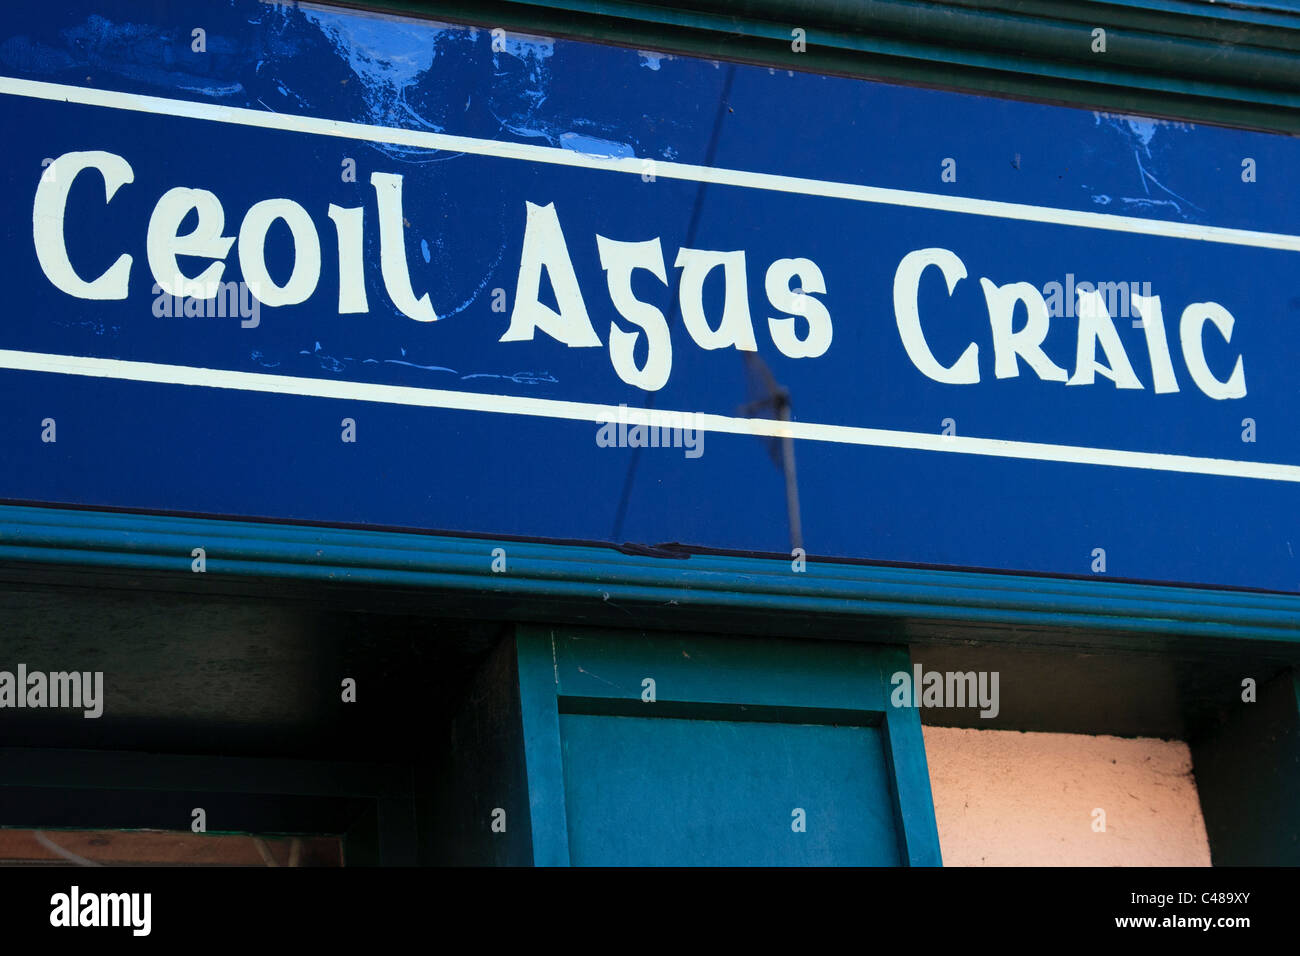 Irish bar sign - Ceol agus craic 'music and fun' Stock Photo